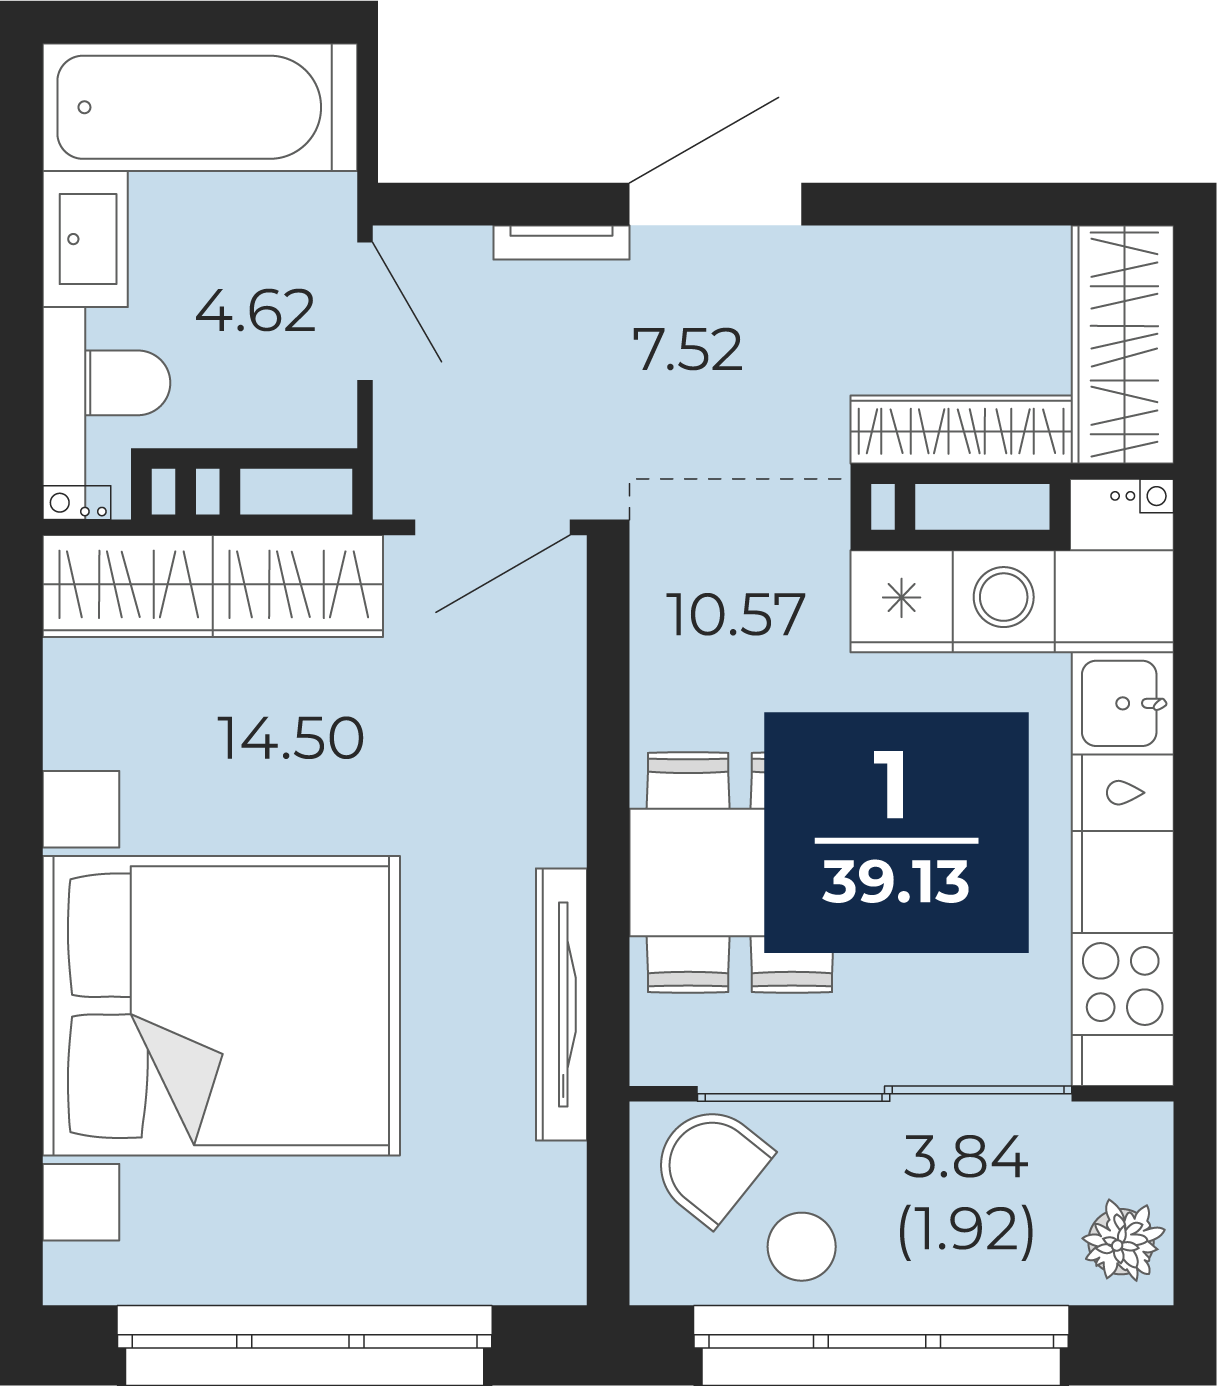 Квартира № 513, 1-комнатная, 39.13 кв. м, 15 этаж